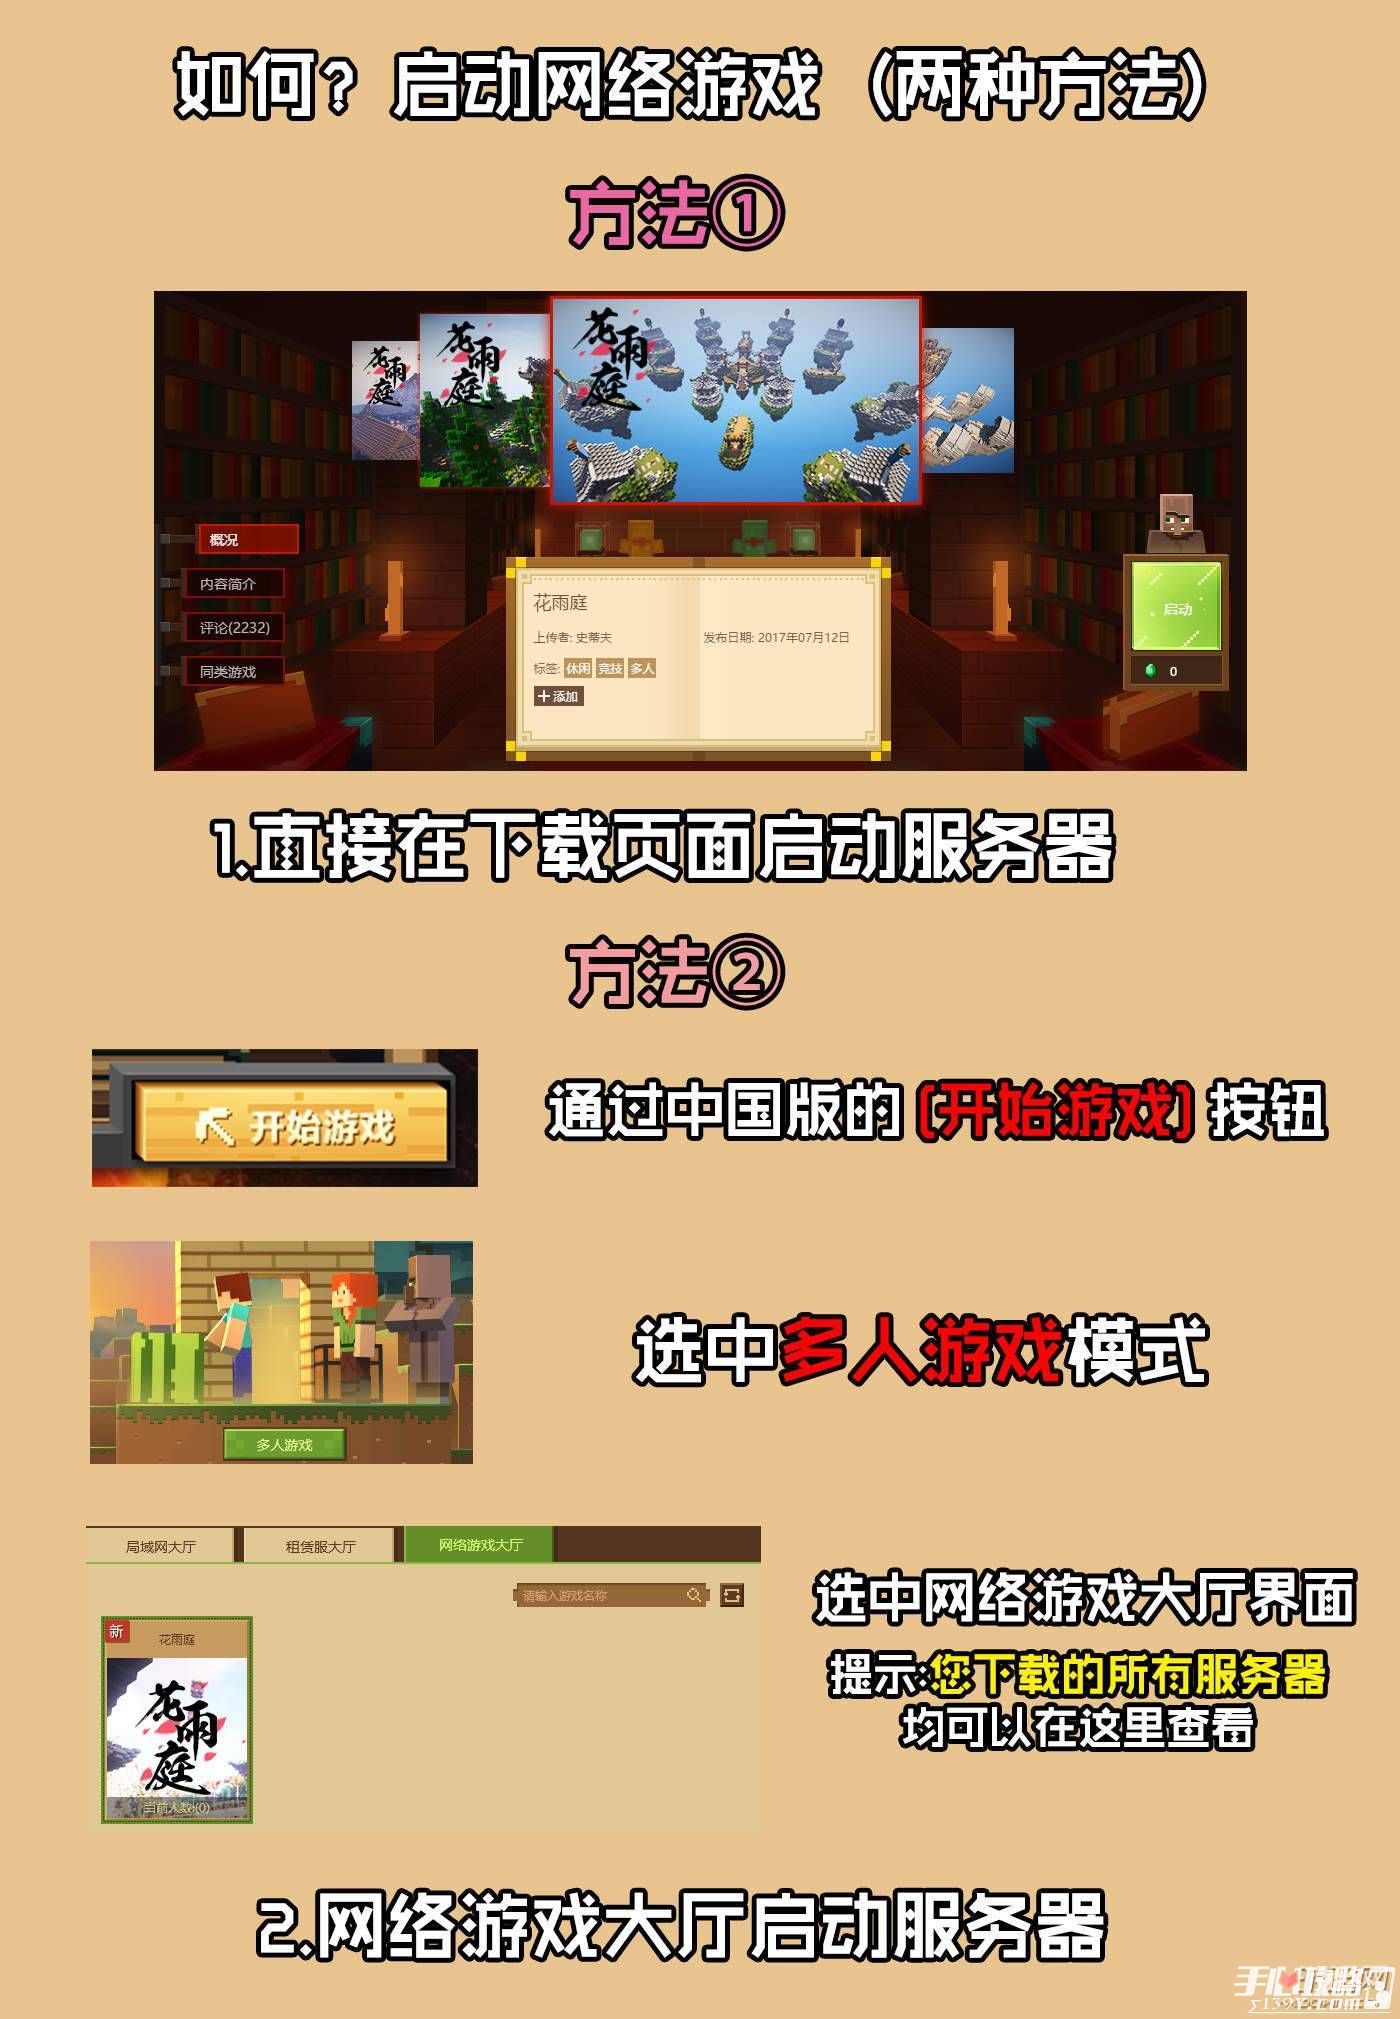 《我的世界》中国版游戏中心图文全模式进入方法攻略讲解 2